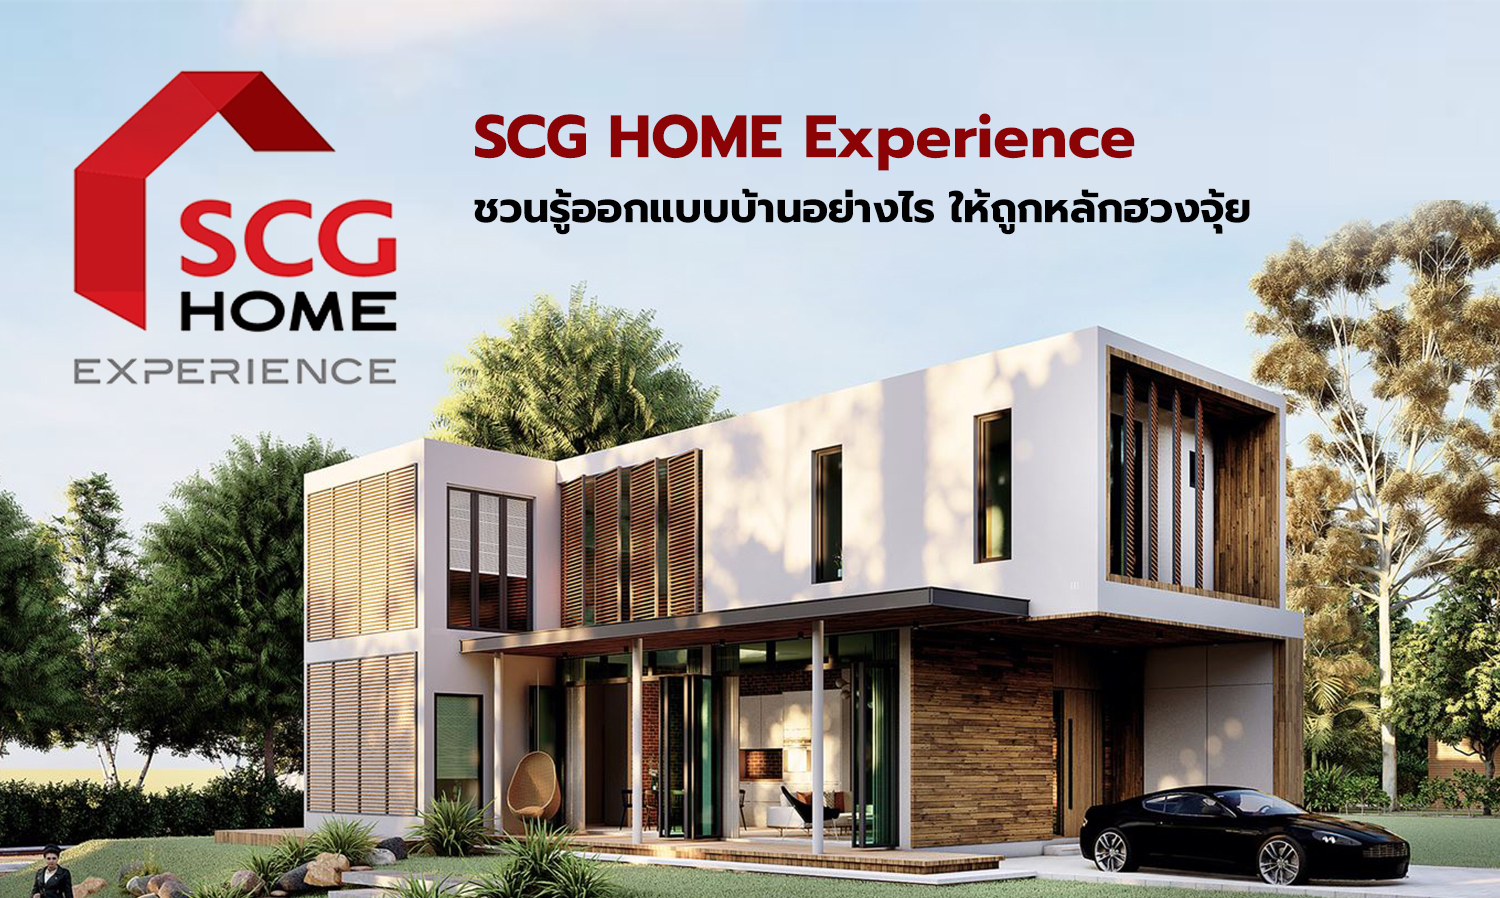 SCG HOME Experience ชวนรู้ออกแบบบ้านอย่างไร ให้ถูกหลักฮวงจุ้ย